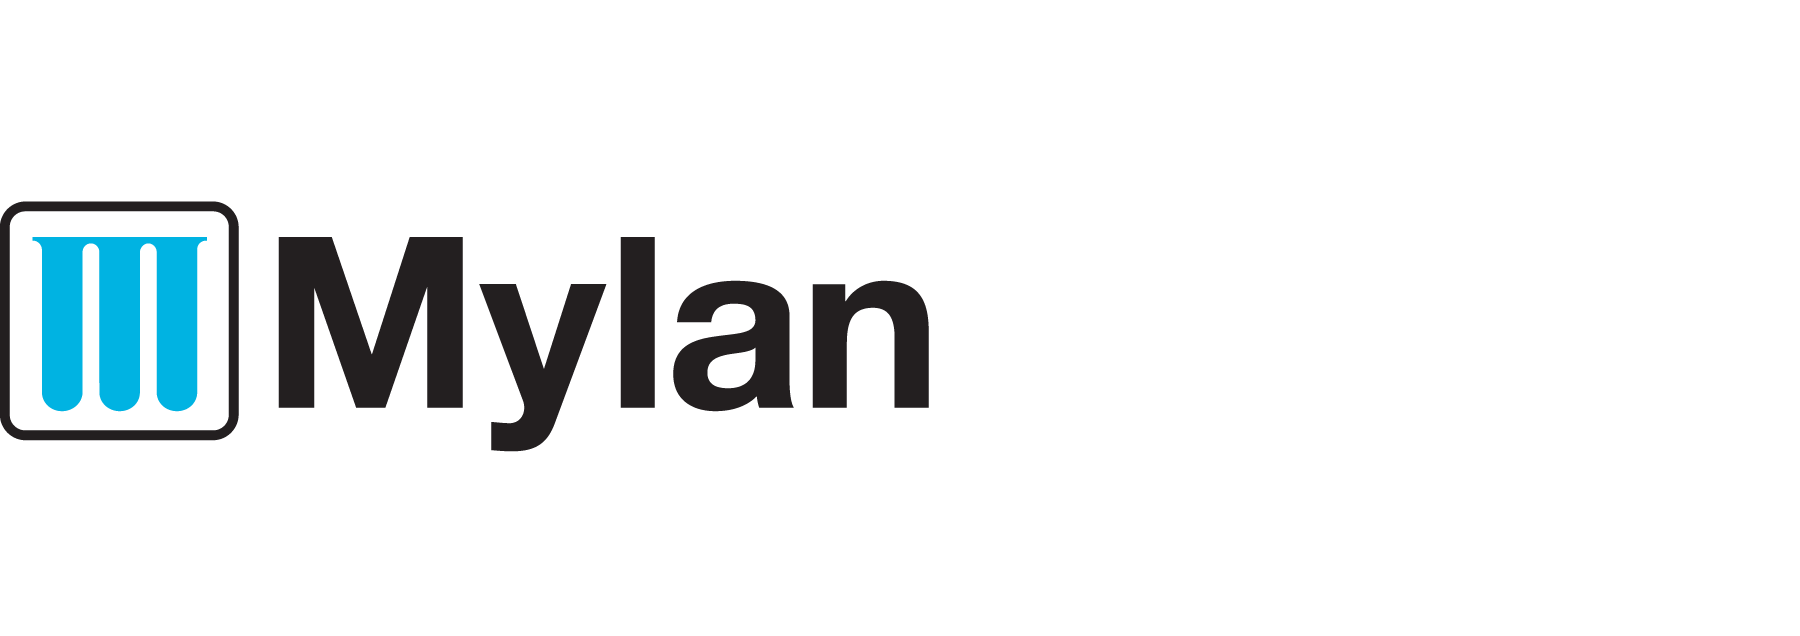 Mylan.png